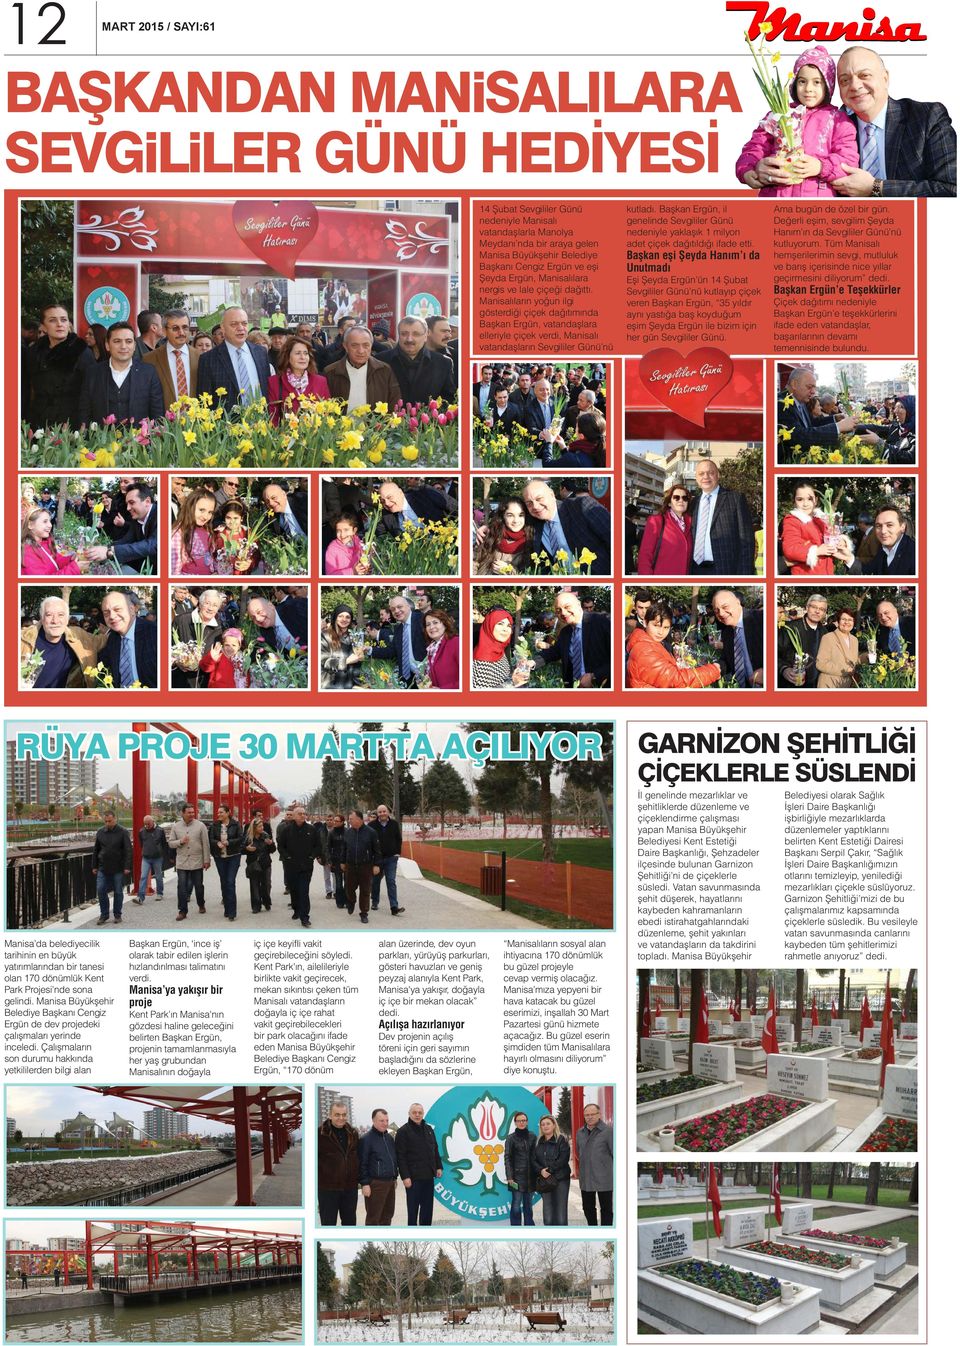 Manisalıların yoğun ilgi gösterdiği çiçek dağıtımında Başkan Ergün, vatandaşlara elleriyle çiçek verdi, Manisalı vatandaşların Sevgililer Günü nü RÜYA PROJE 30 MART TA AÇILIYOR Manisa da